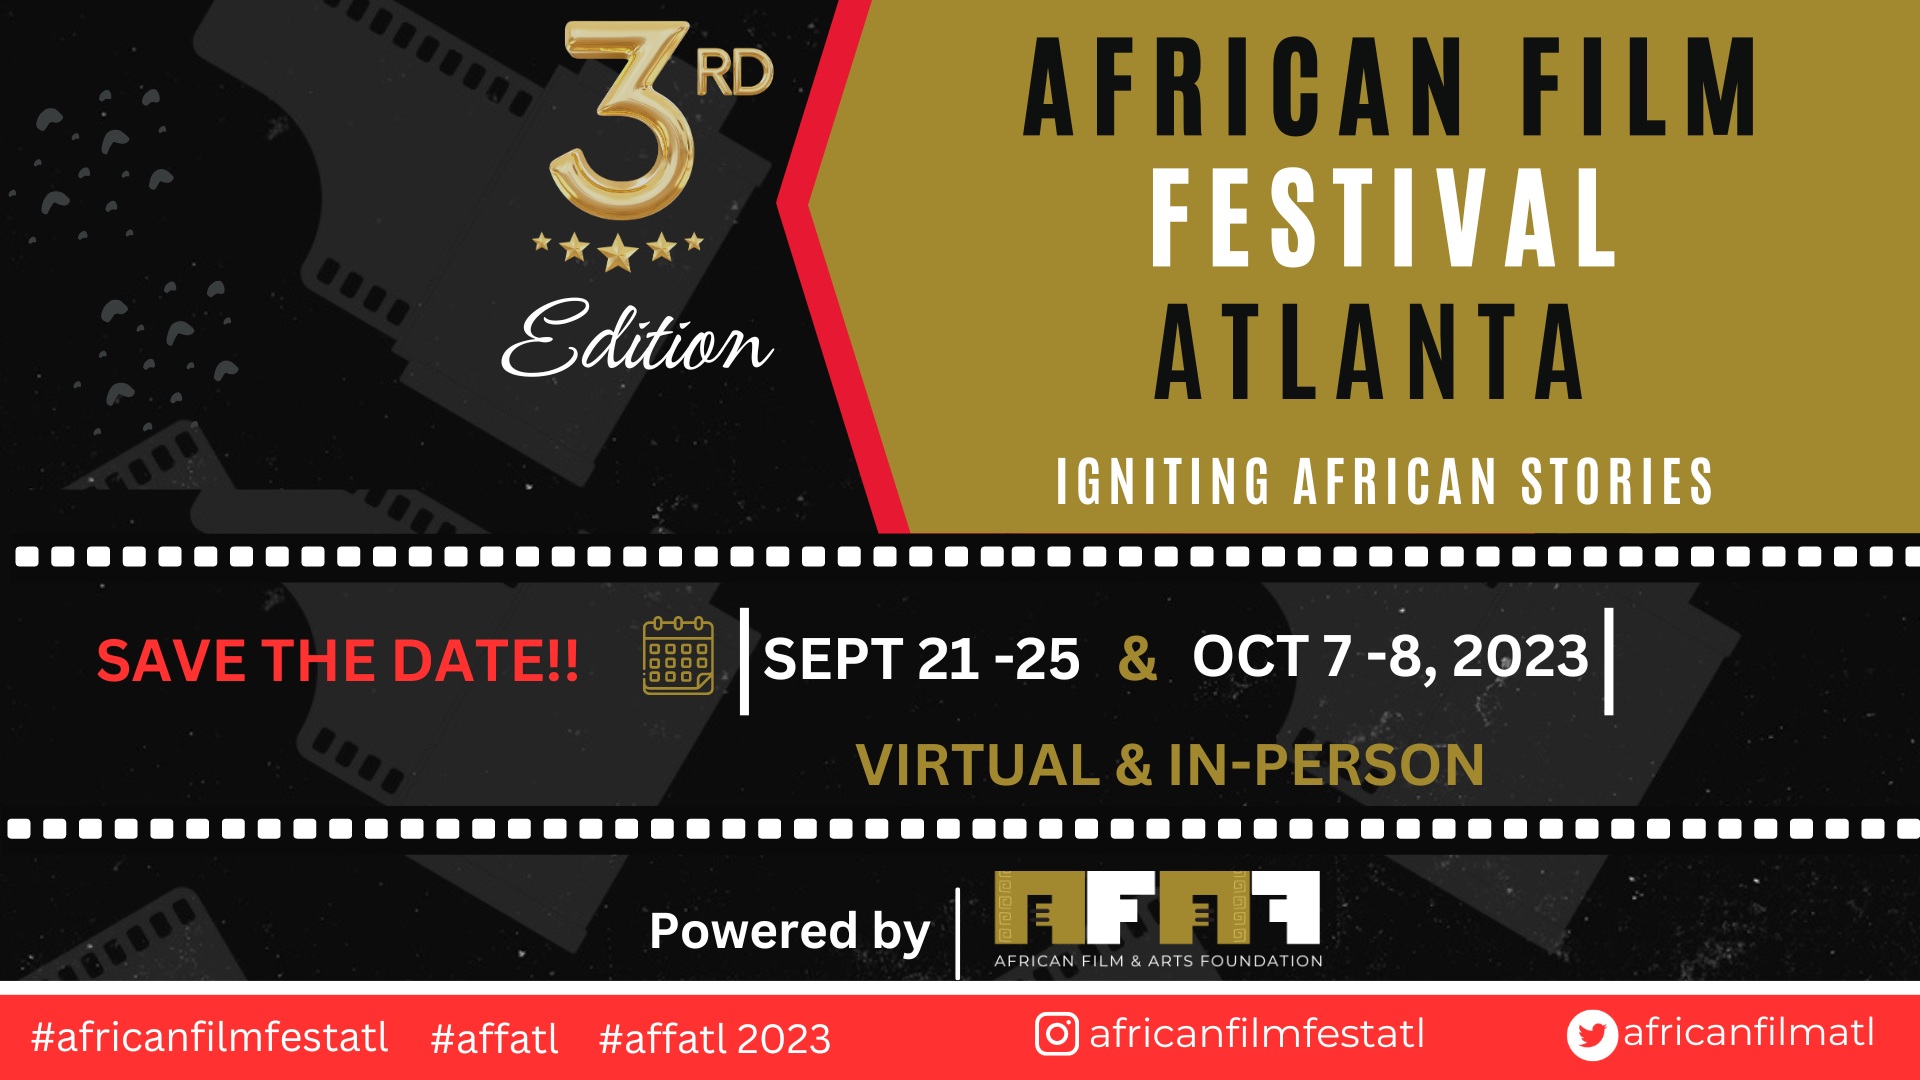 African Film Festival Atlanta website banner 2023